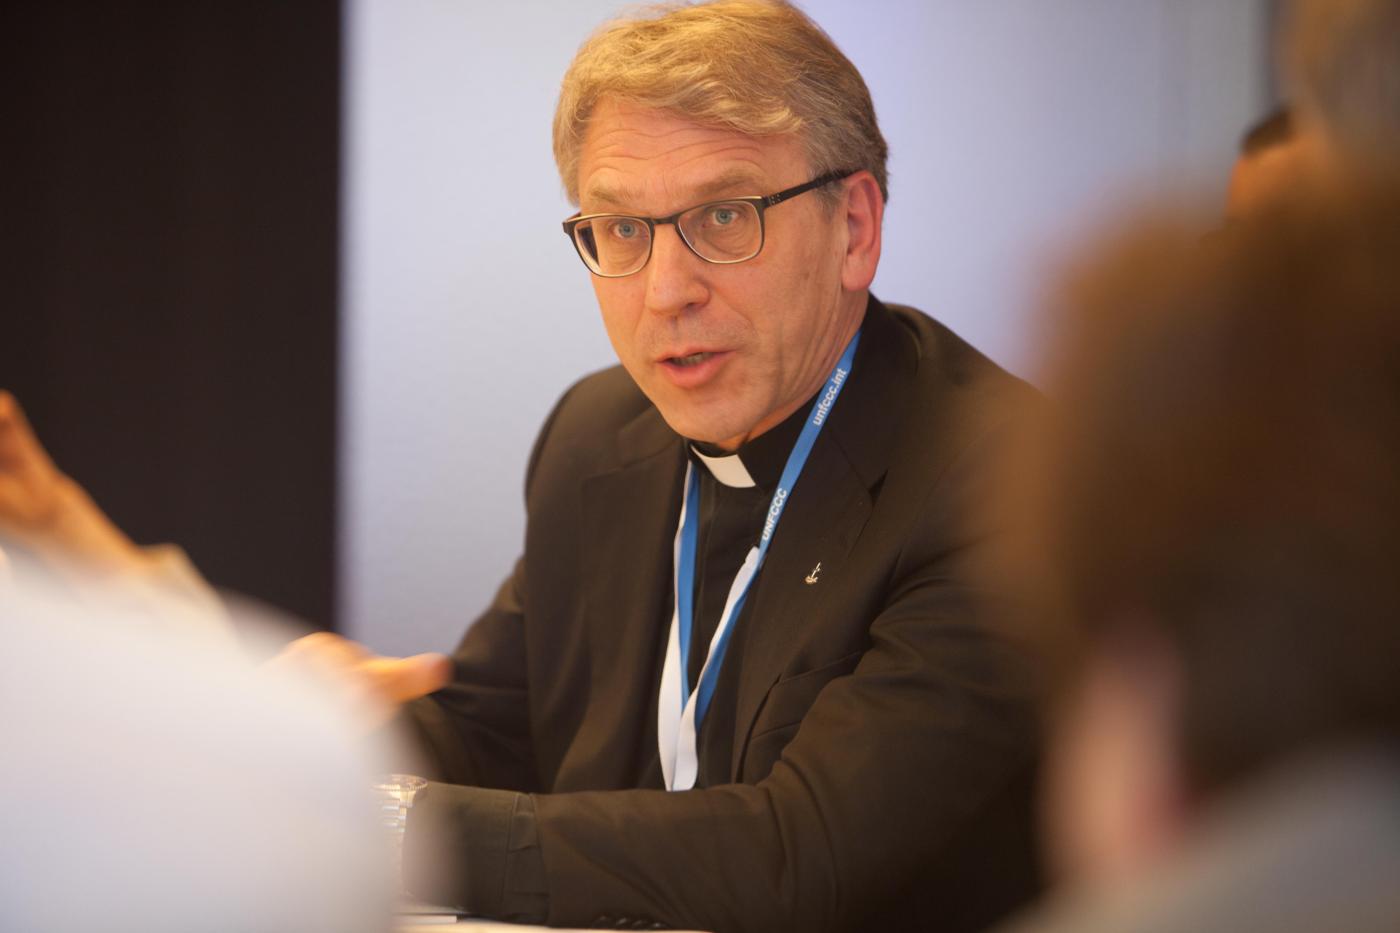 Le secrétaire général du COE, le pasteur Olav Fykse Tveit, à la Conférence des Nations Unies sur le climat à Paris. © Sean Hawkey/COE